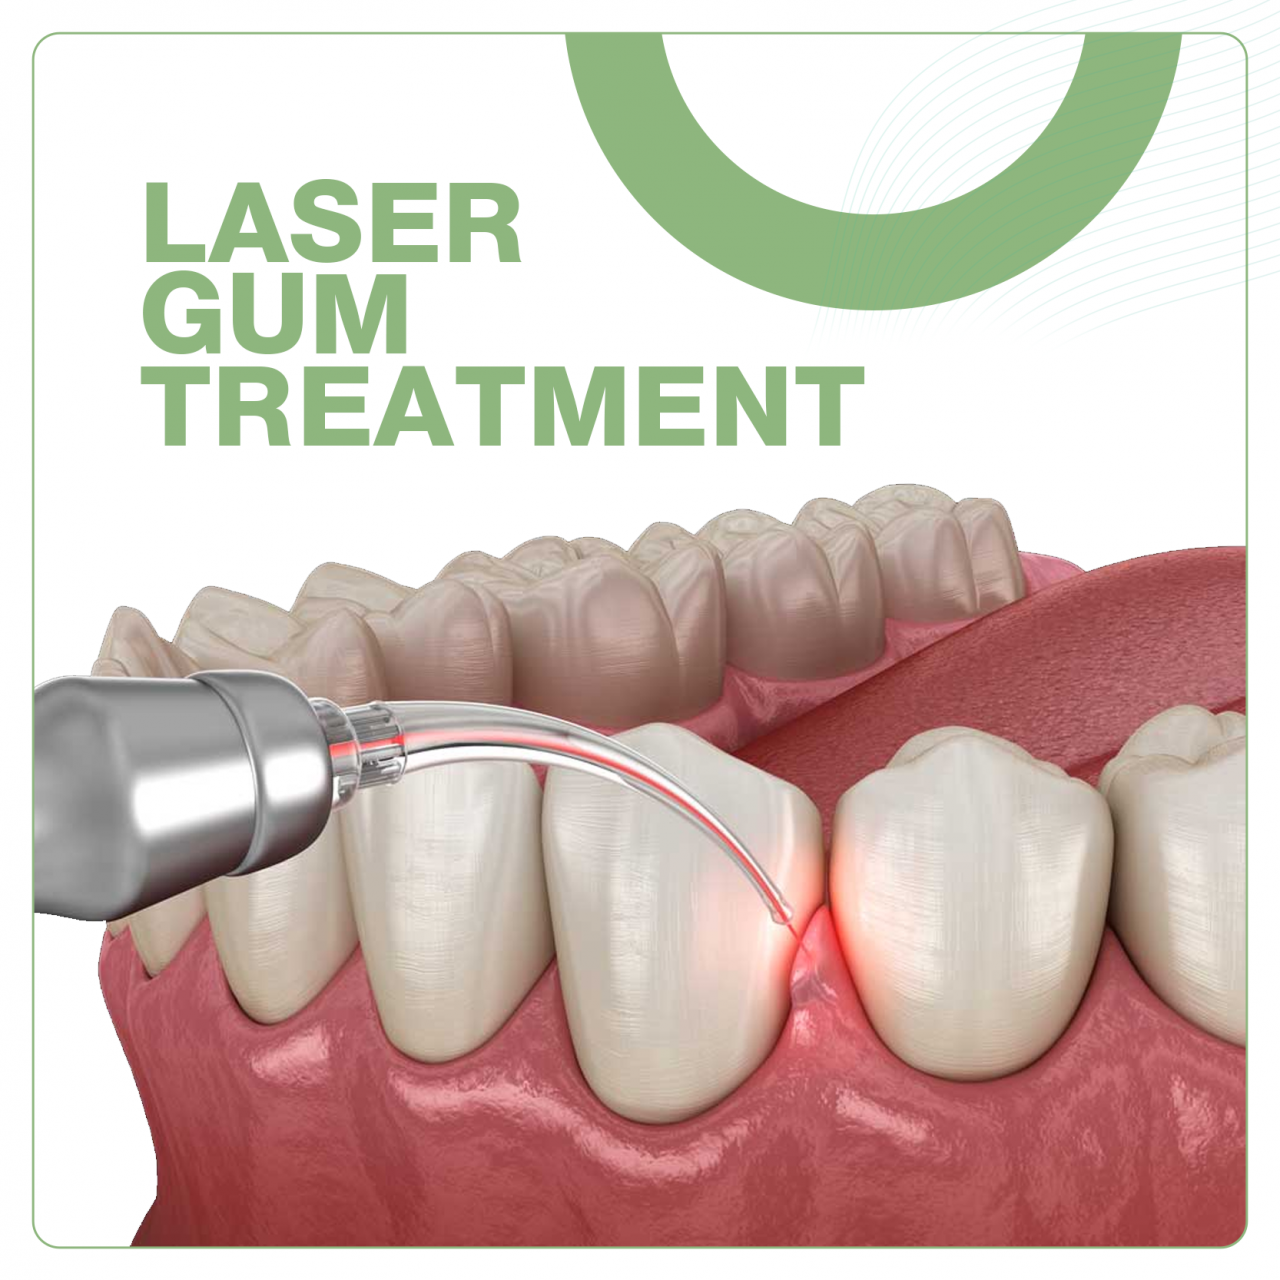 Laser Gum treatment